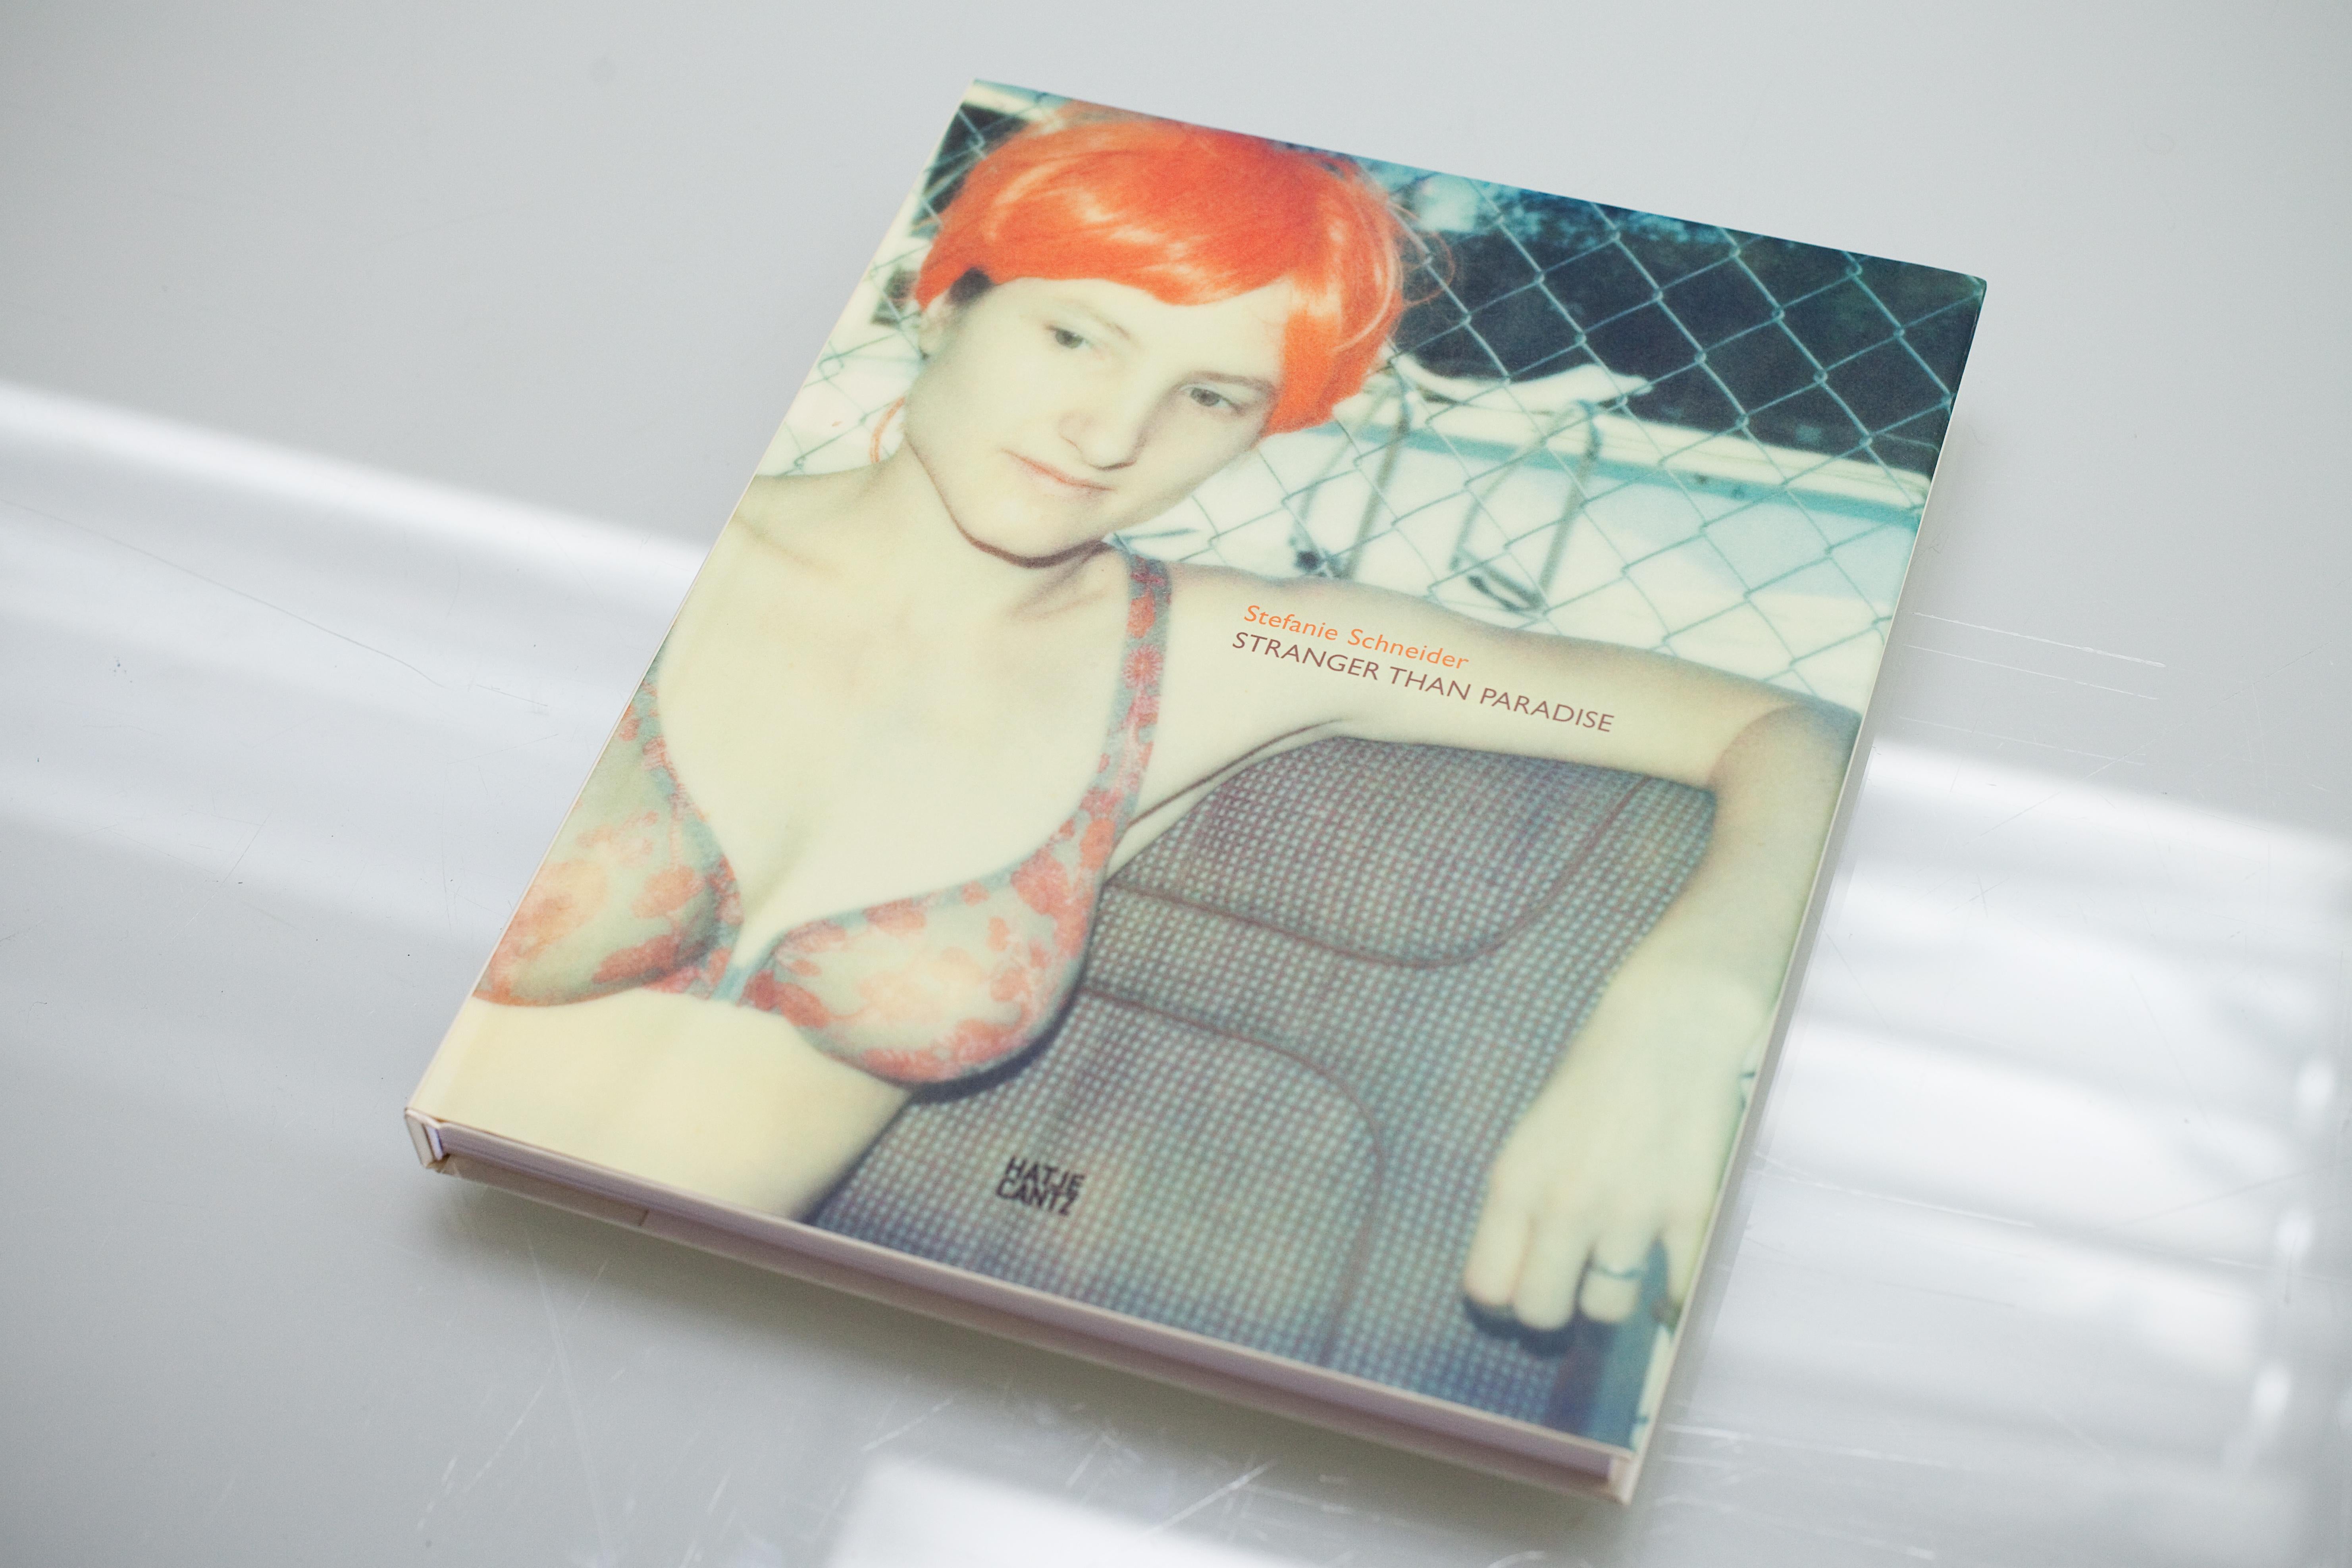 Stefanie Schneider Color Photograph - STRANGER THAN PARADISE published by Hatje Cantz Verlag, 2006  - Monograph